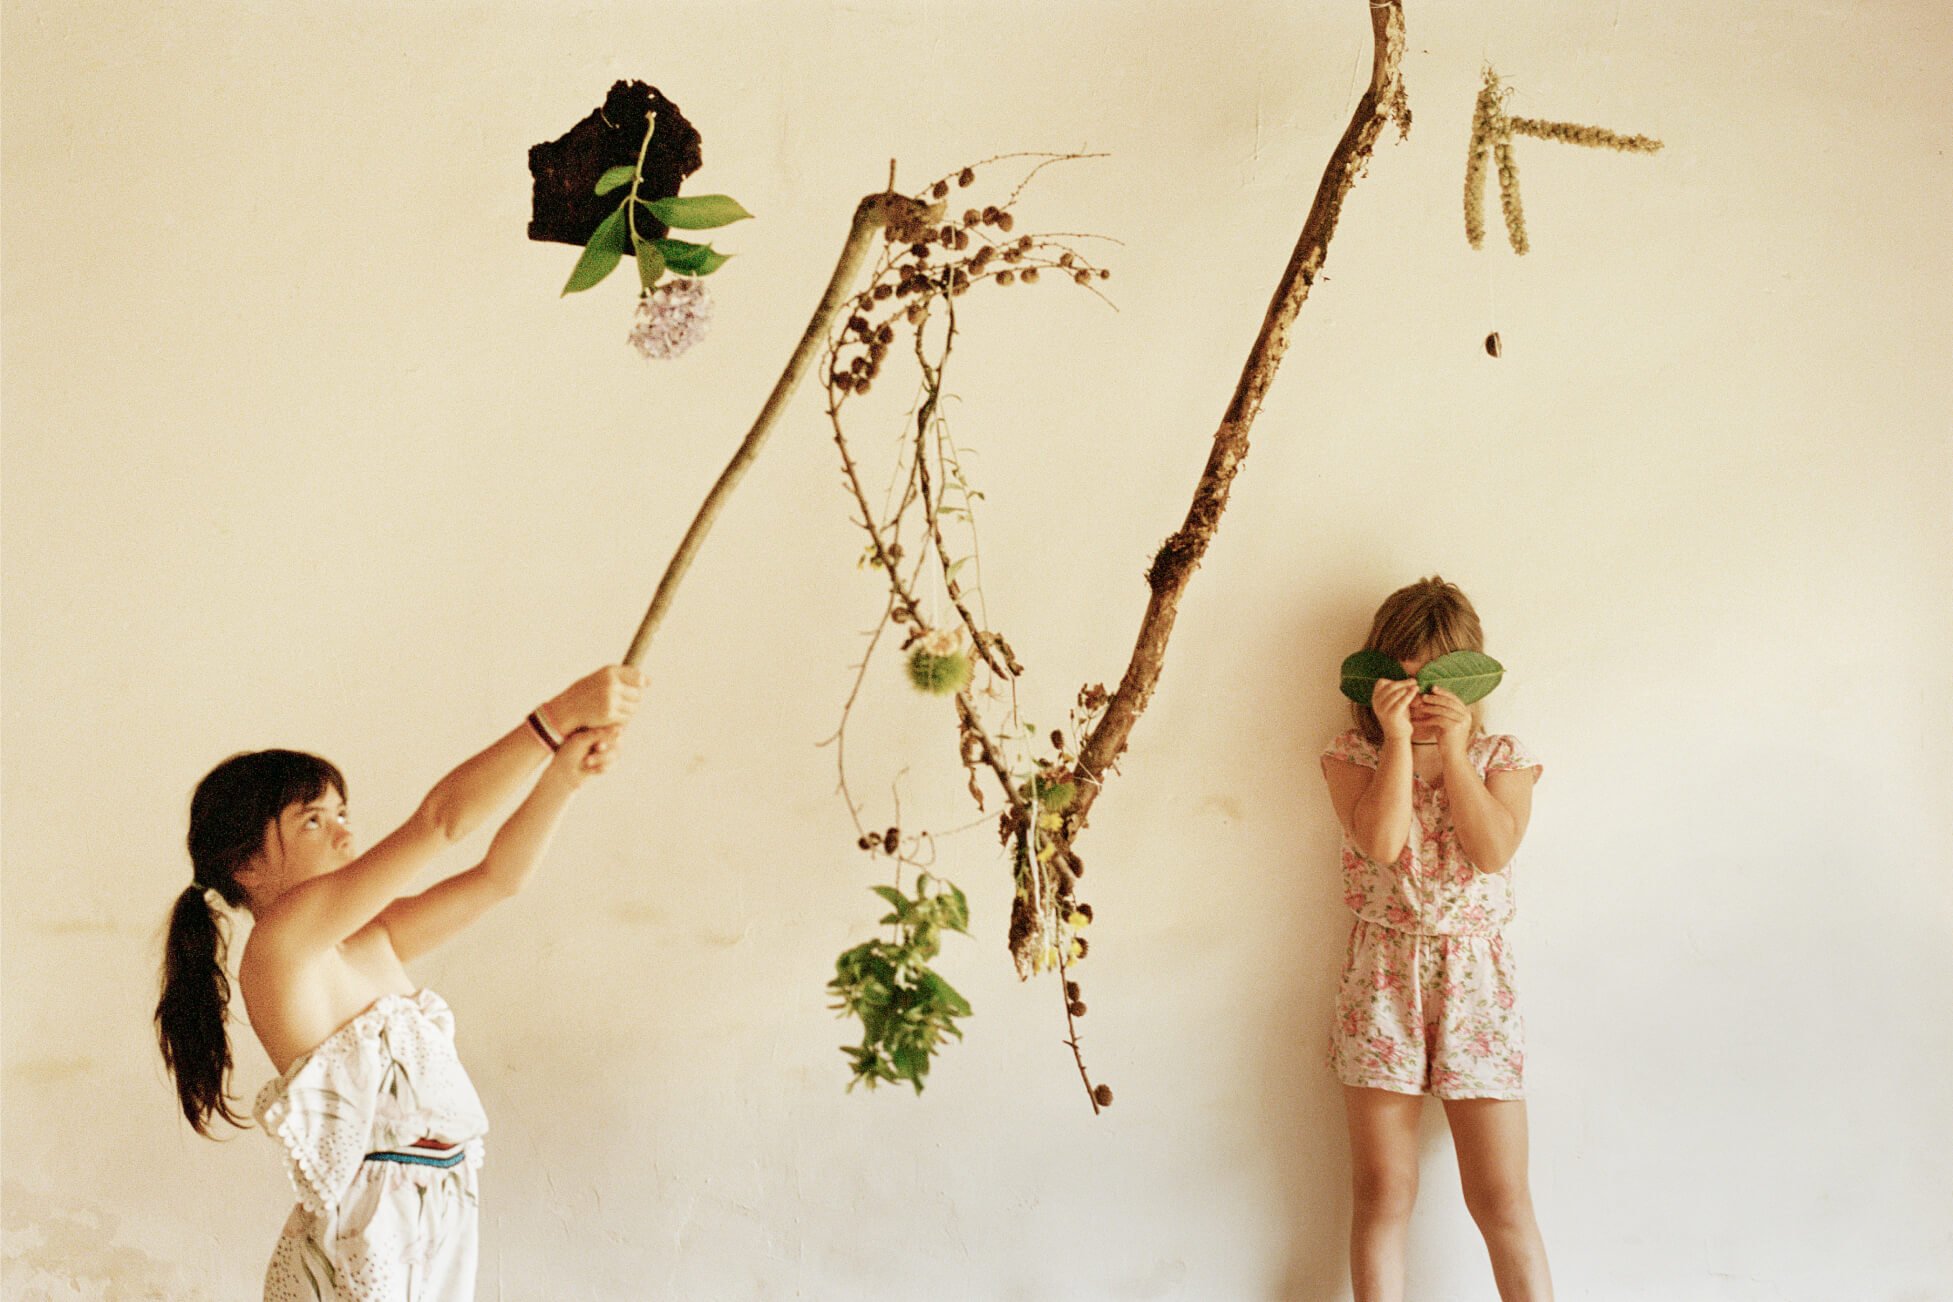 Duas meninas brincam com galhos e folhas em um plano de fundo neutro.